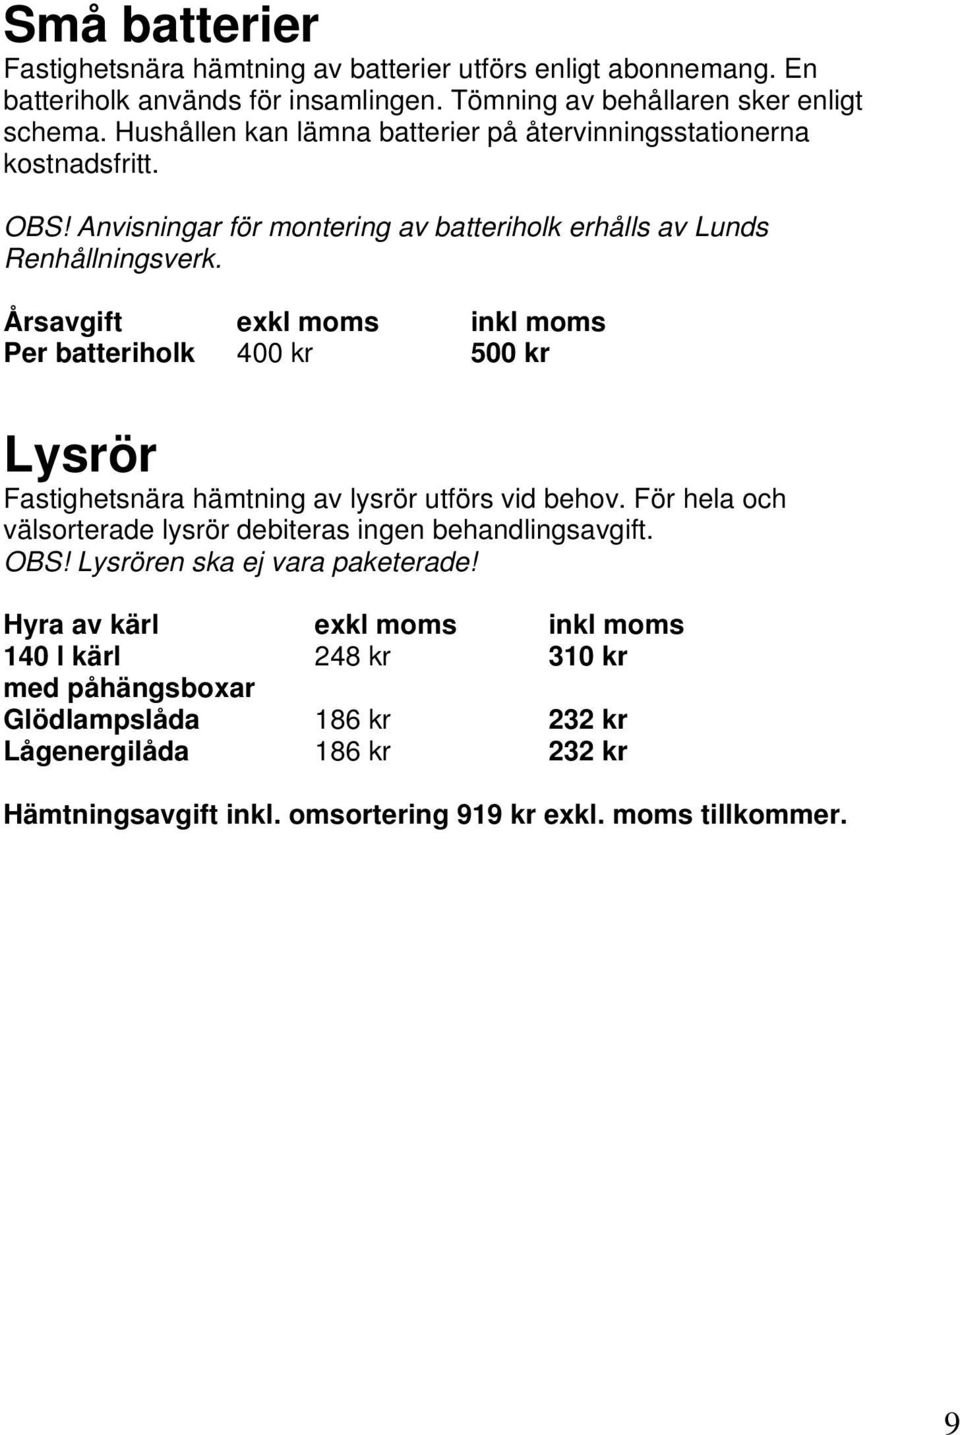 Årsavgift exkl moms inkl moms Per batteriholk 400 kr 500 kr Lysrör Fastighetsnära hämtning av lysrör utförs vid behov.